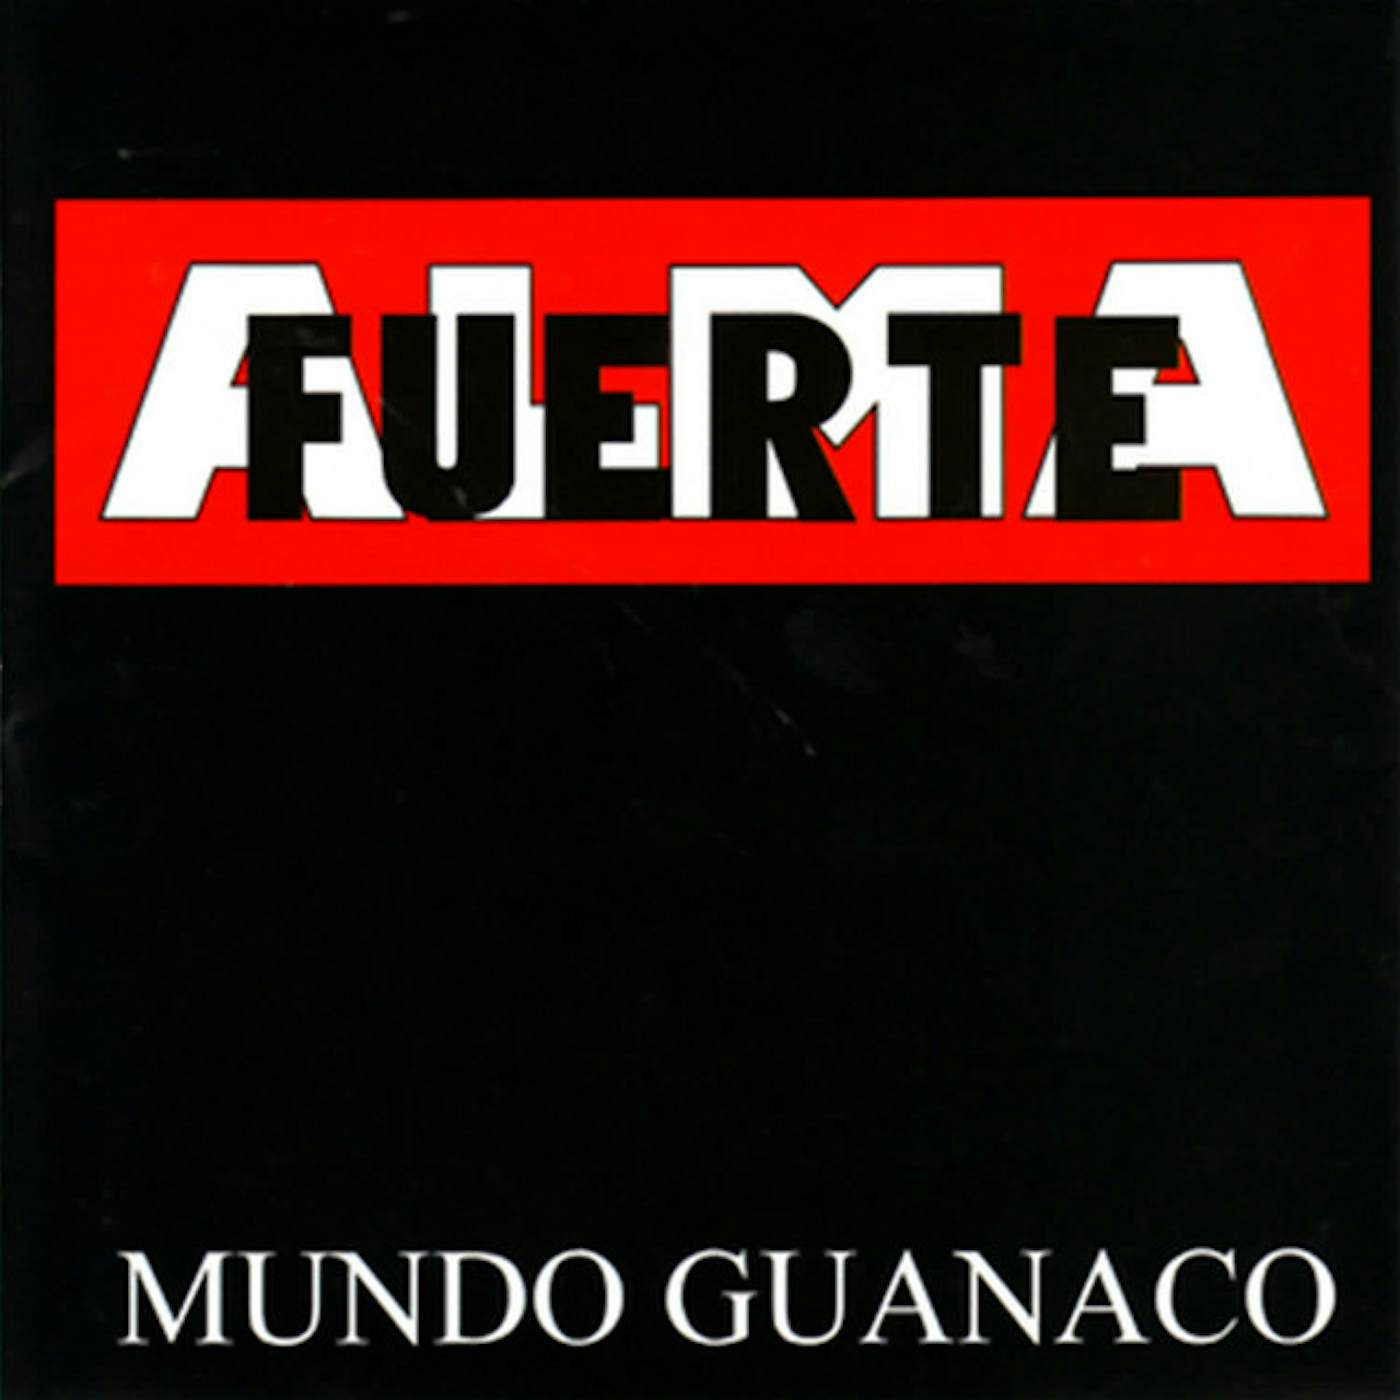 Almafuerte MUNDO GUANACO CD